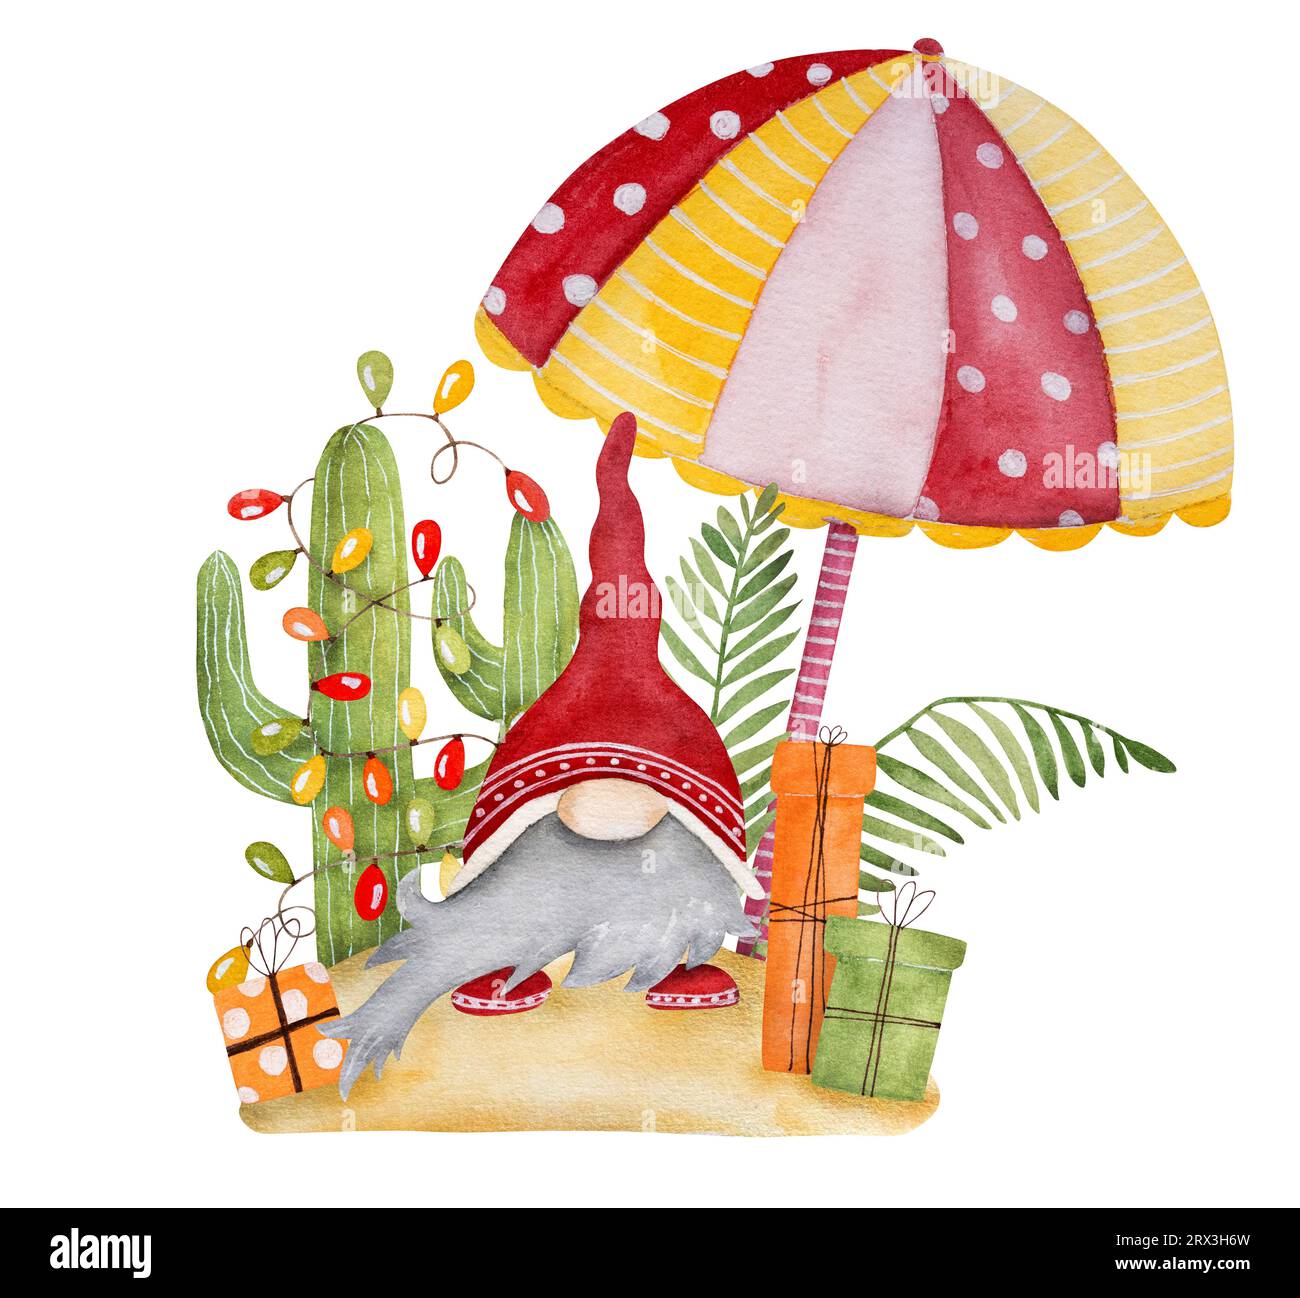 Peinture aquarelle joyeuse de noël des Caraïbes avec nain drôle, parasol et cactus festifs du Mexique. Carte postale tropicale du nouvel an avec gnome Banque D'Images